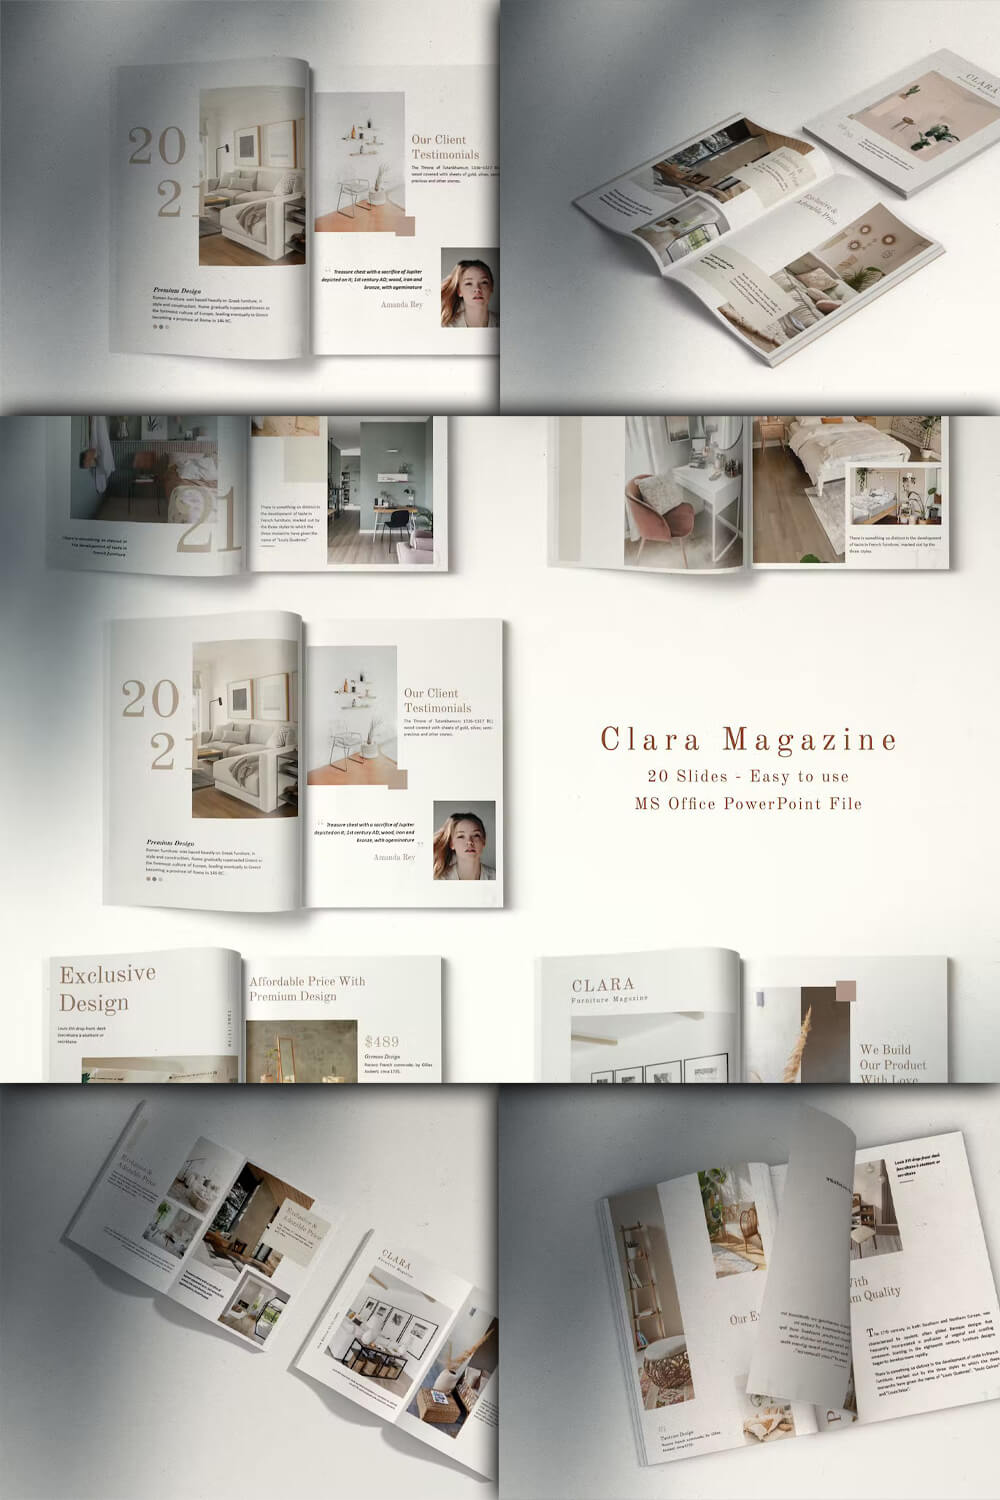 Exclusive design of Clara Magazine.